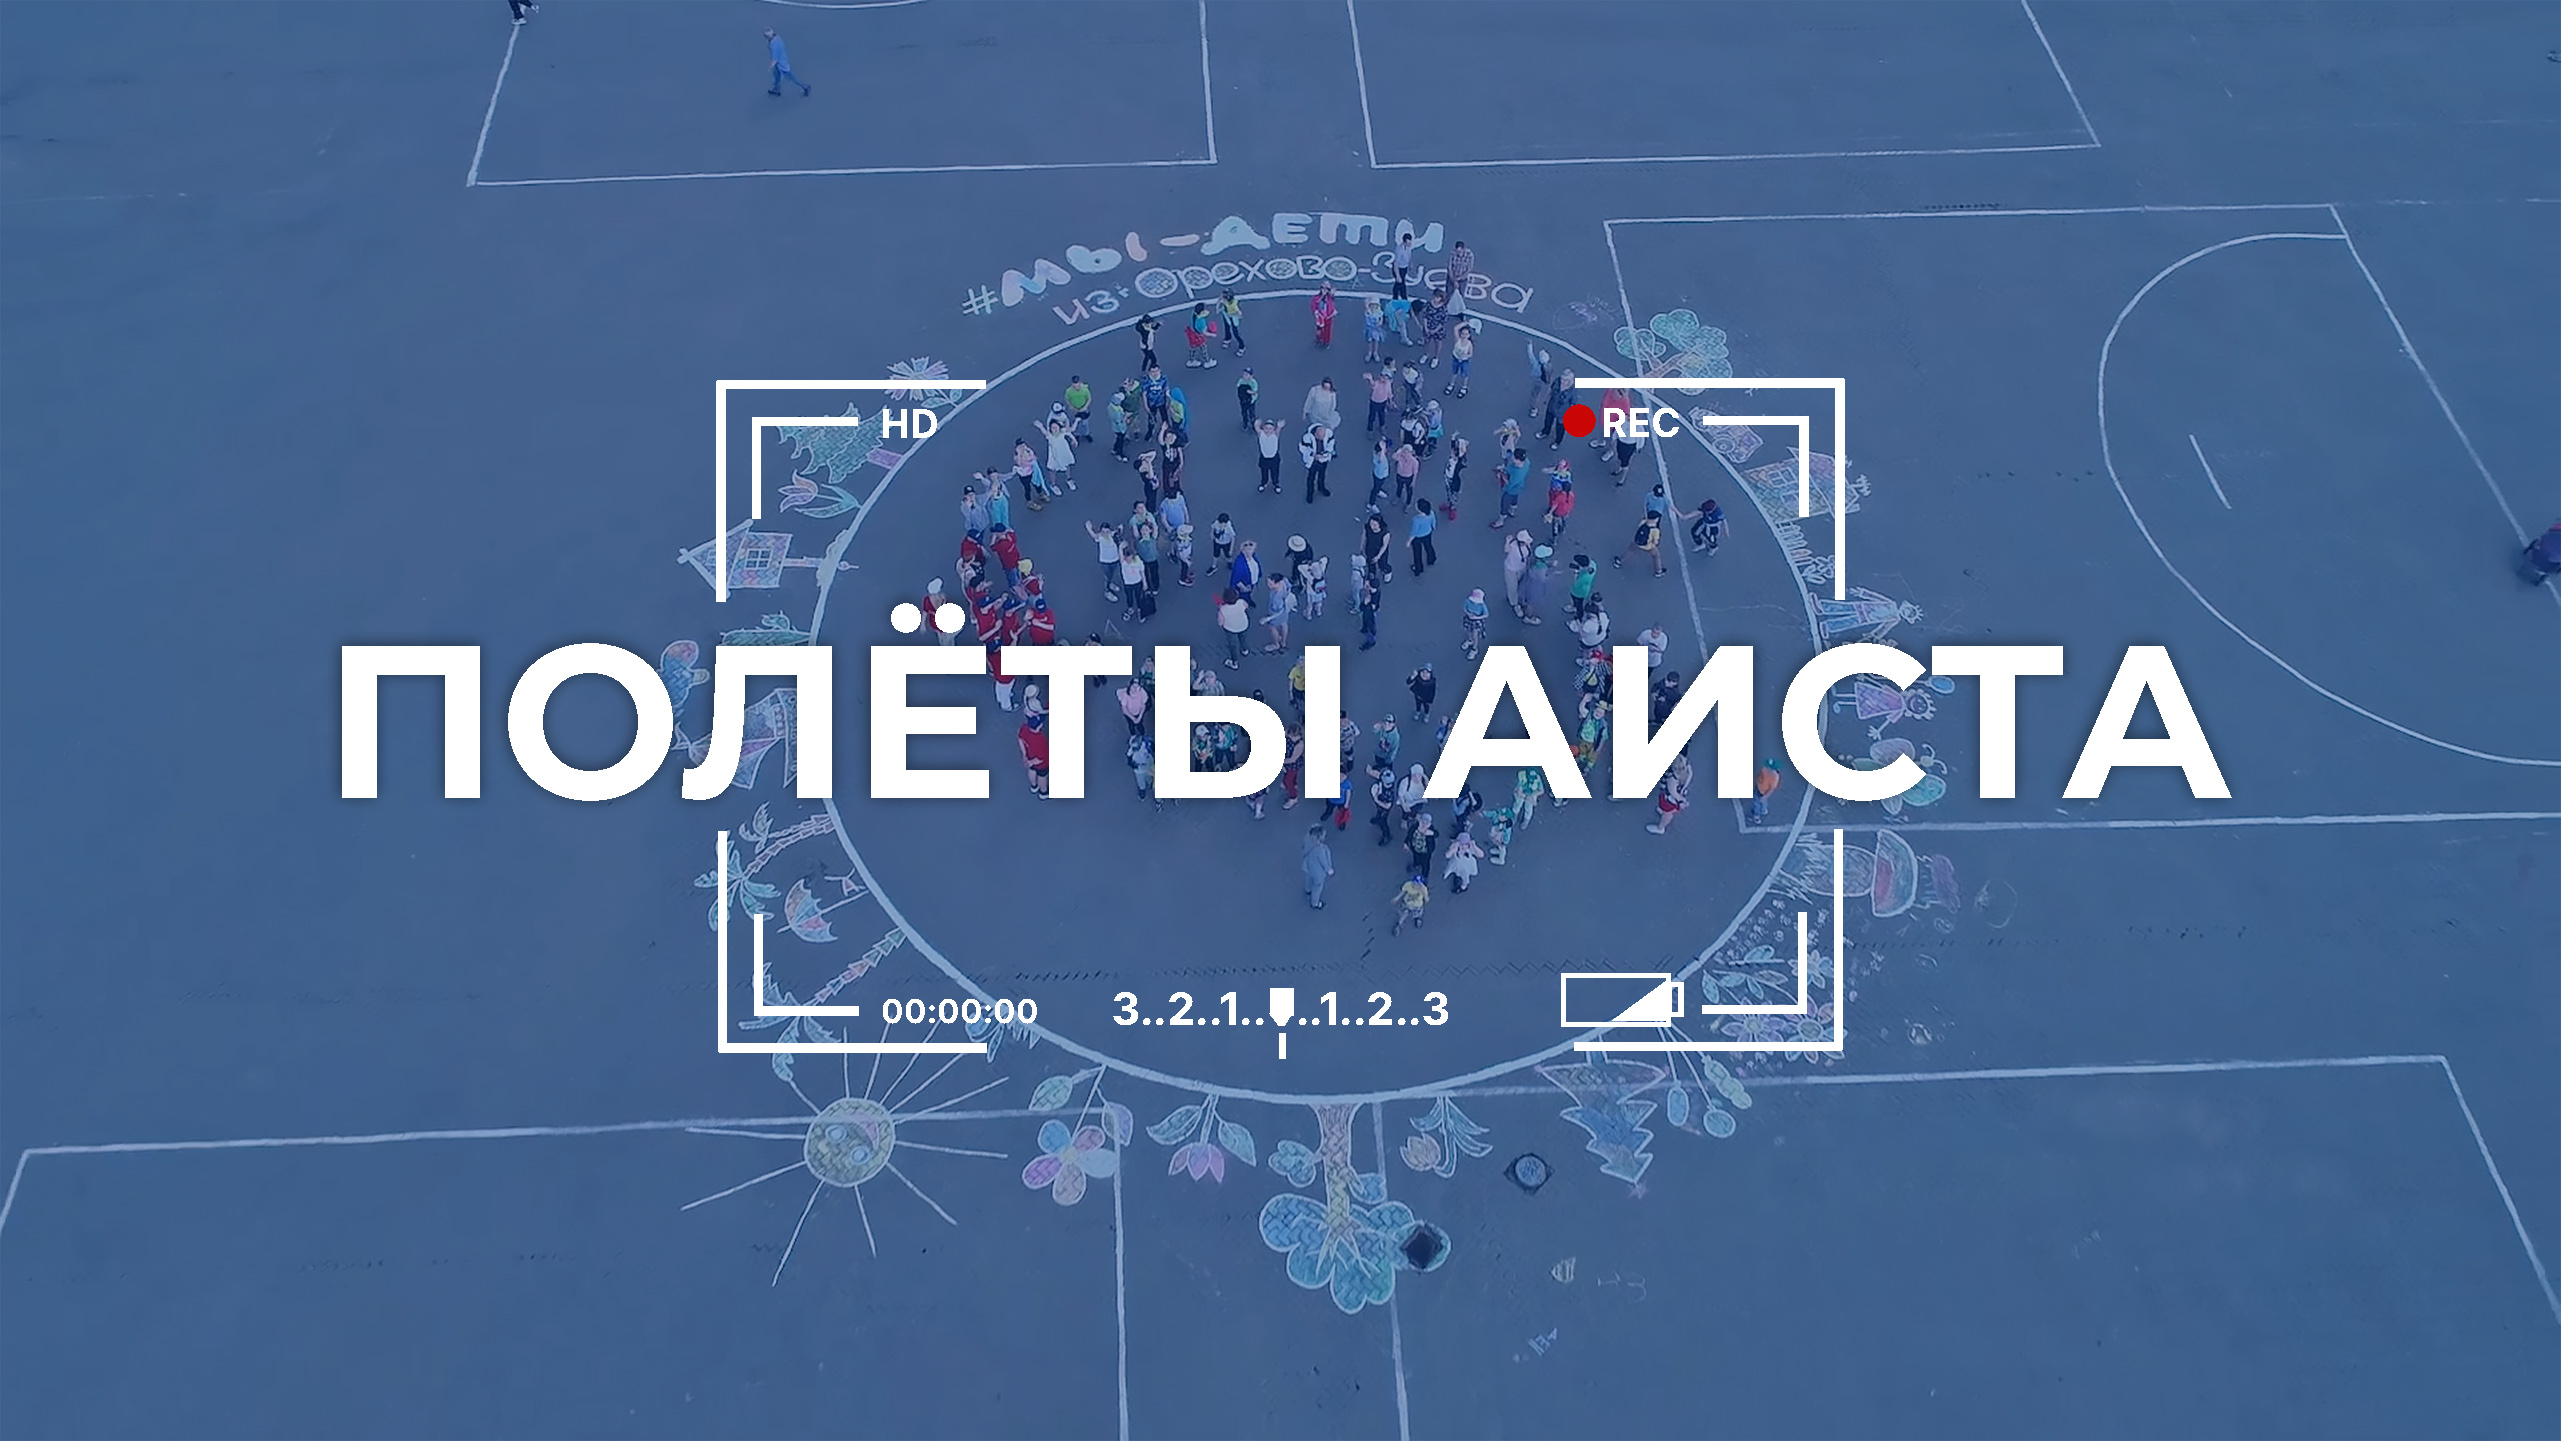 Полеты аиста. Изображение планеты Земля появилось на Октябрьской площади в Орехово-Зуеве